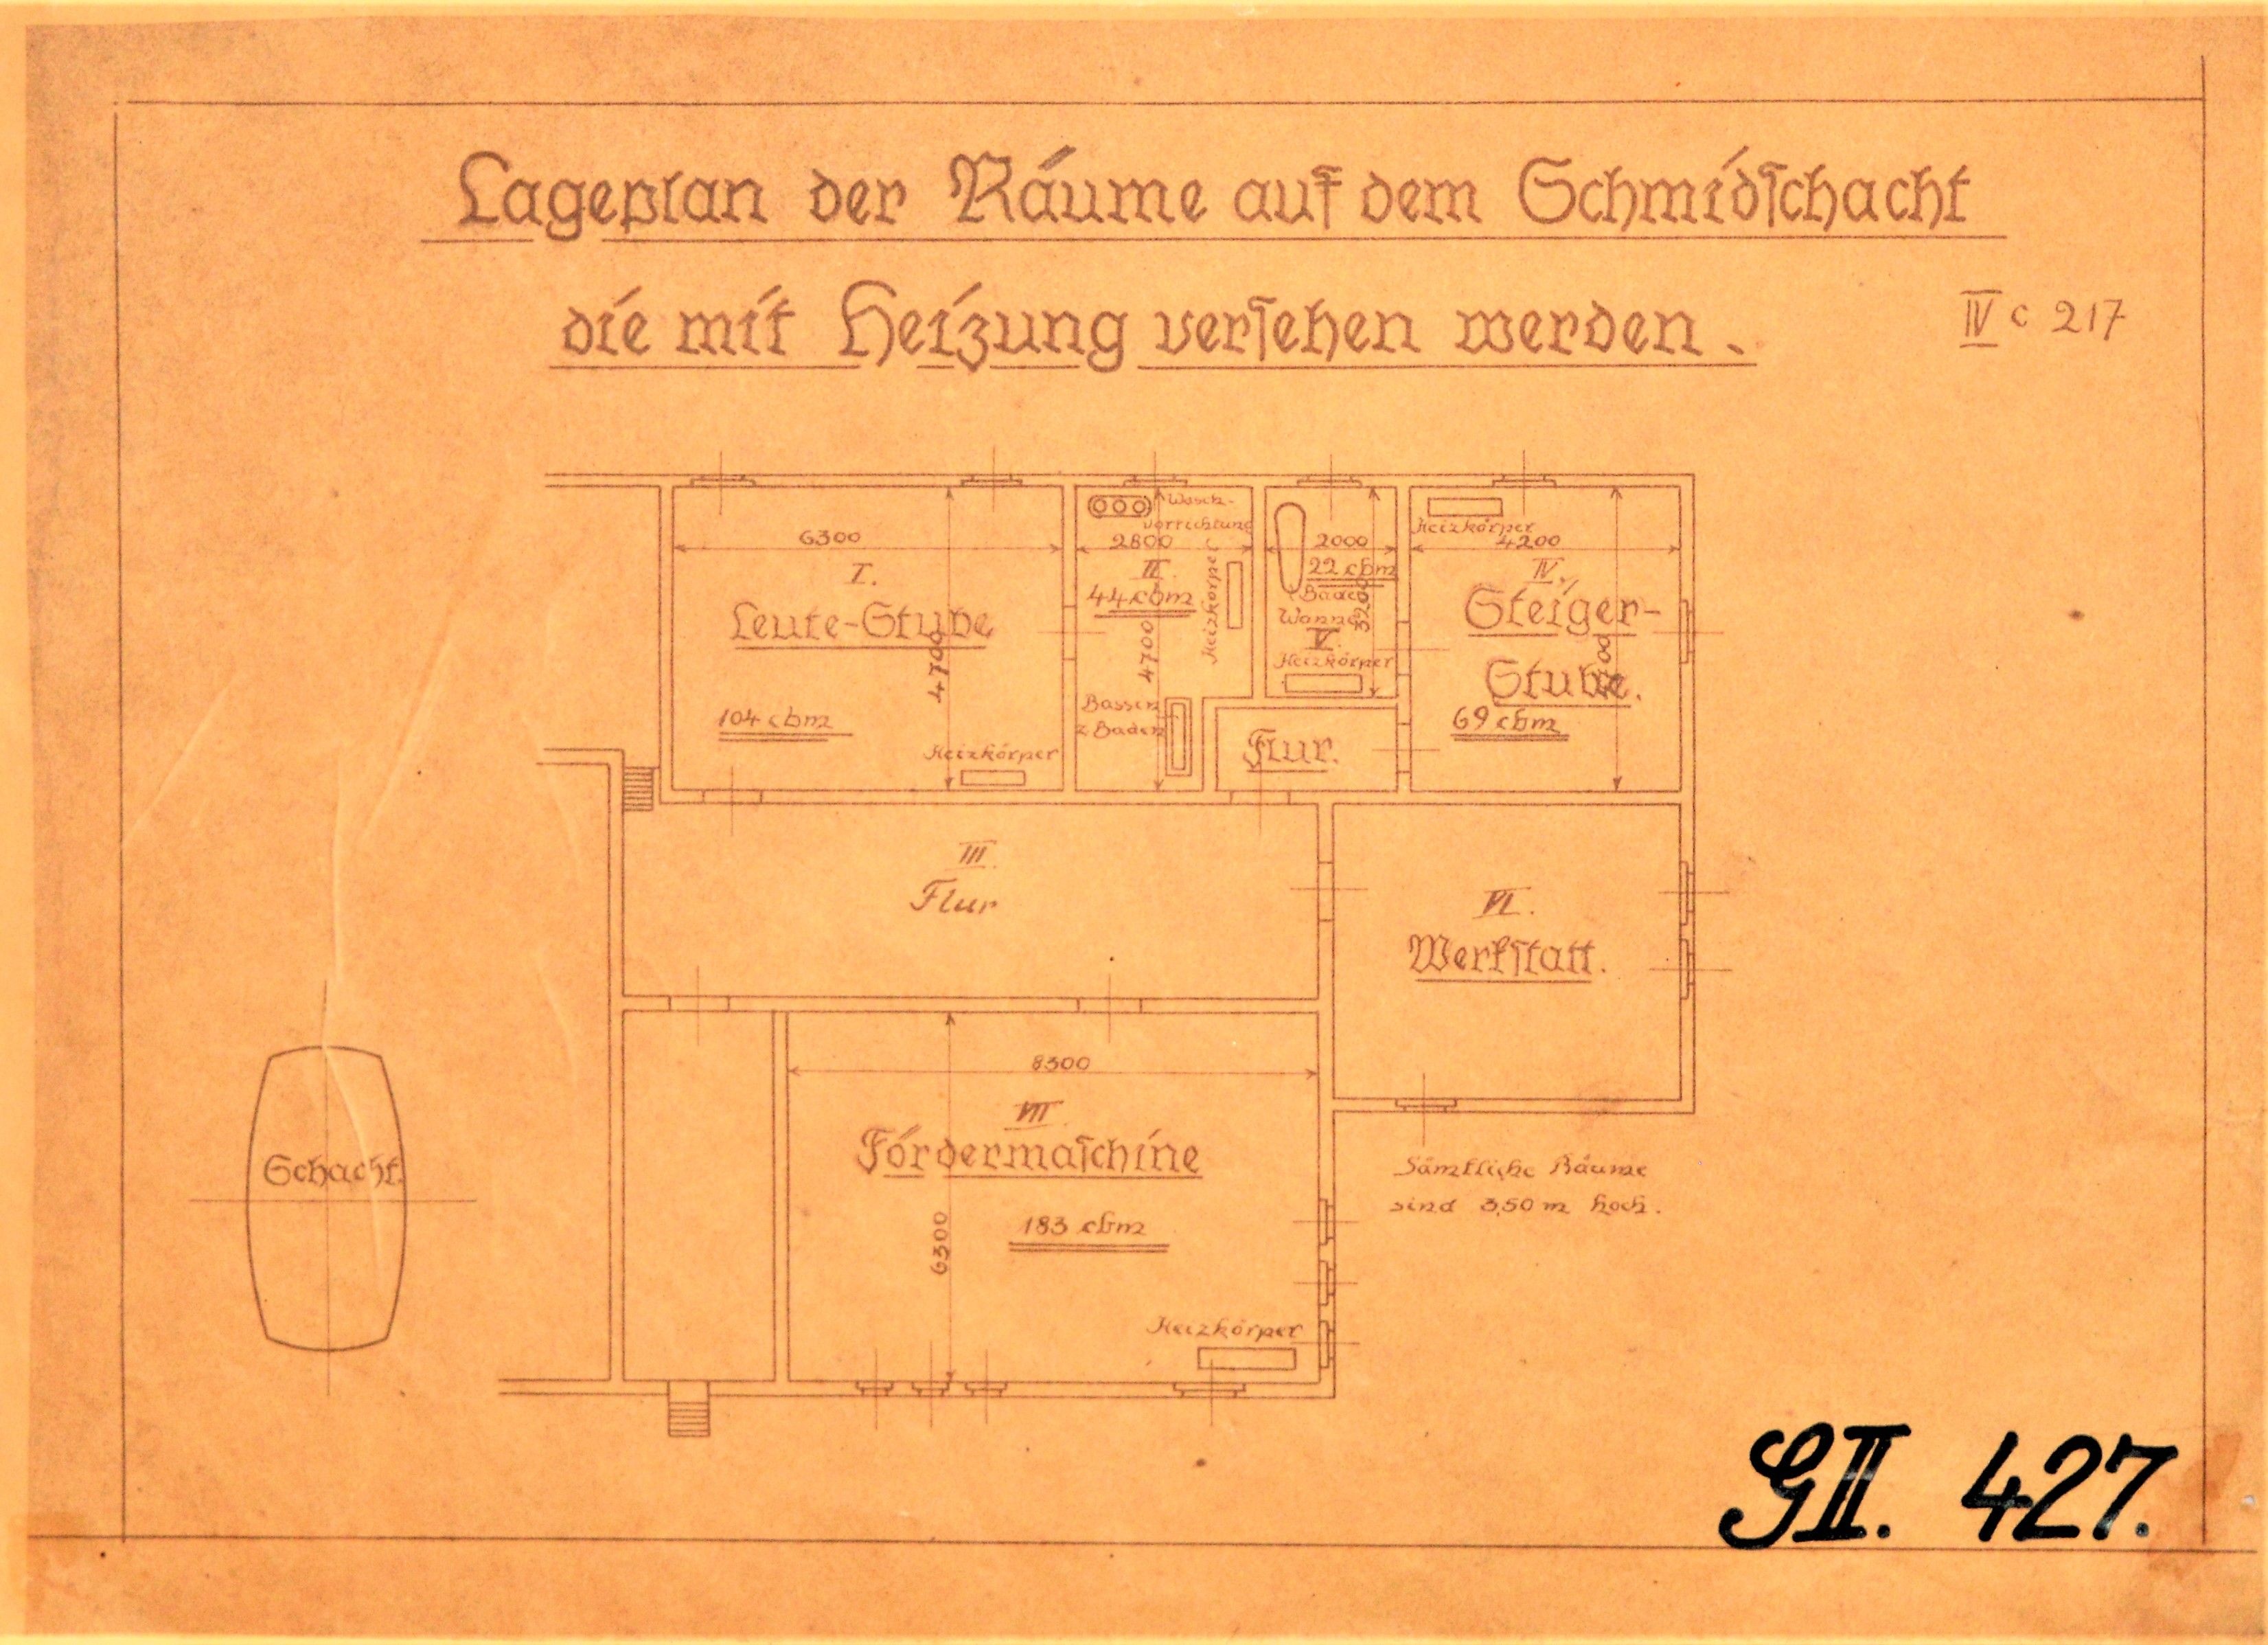 Lageplan der Räume auf dem Schmidtschacht die mit Heizung versehen werden. (Mansfeld-Museum im Humboldt-Schloss CC BY-NC-SA)